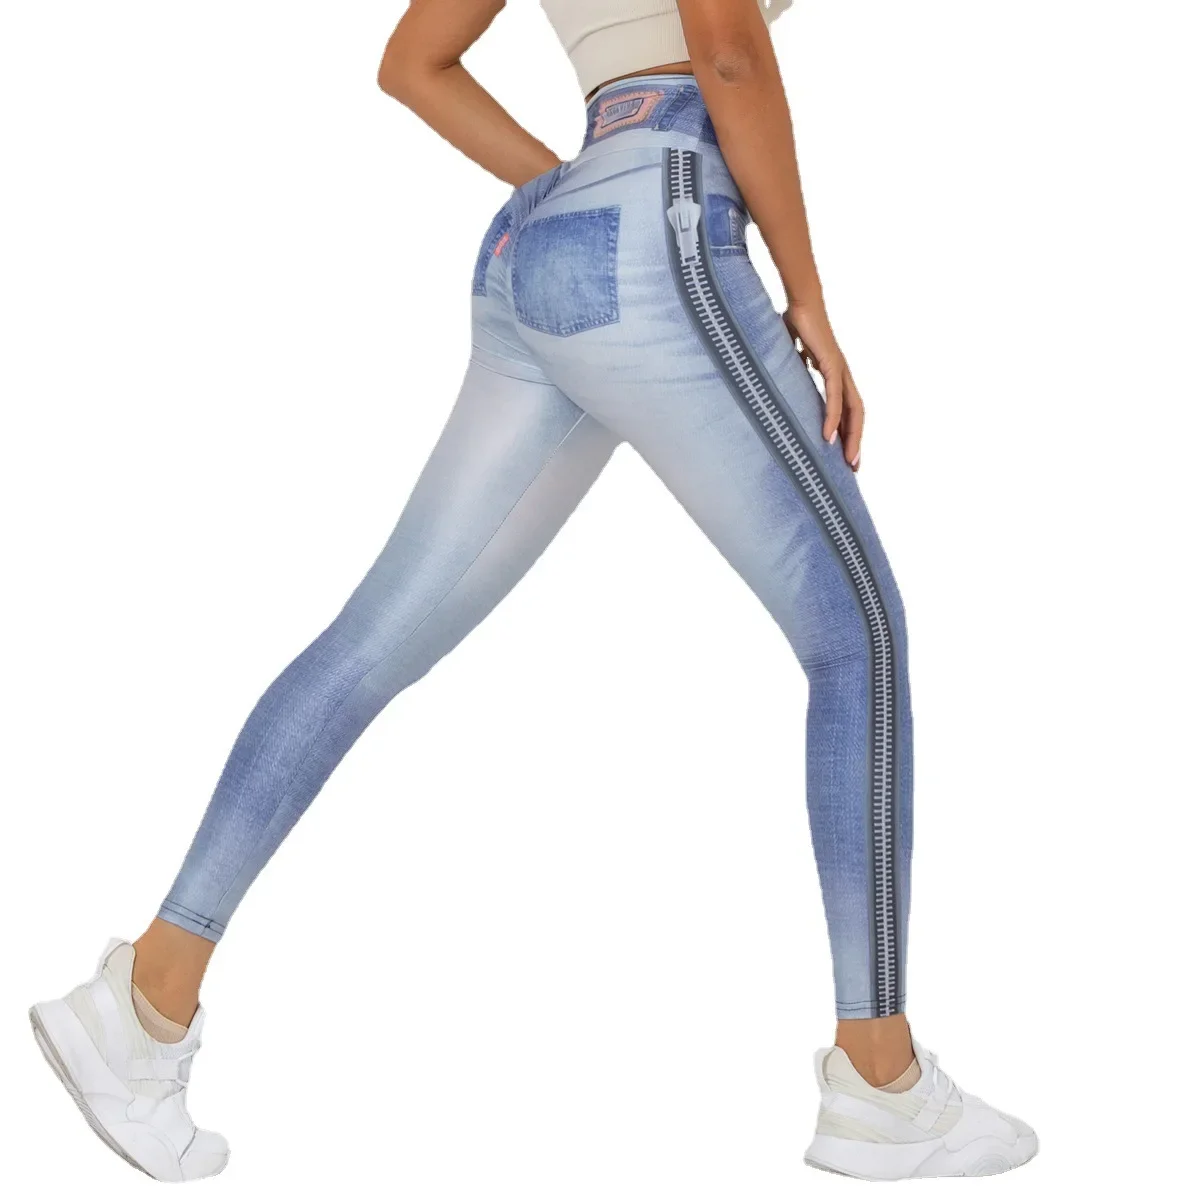 

Джинсовые штаны для йоги с цифровым принтом, женские спортивные Леггинсы с эффектом пуш-ап, колготки для тренажерного зала, тренировок и упражнений, штаны для фитнеса